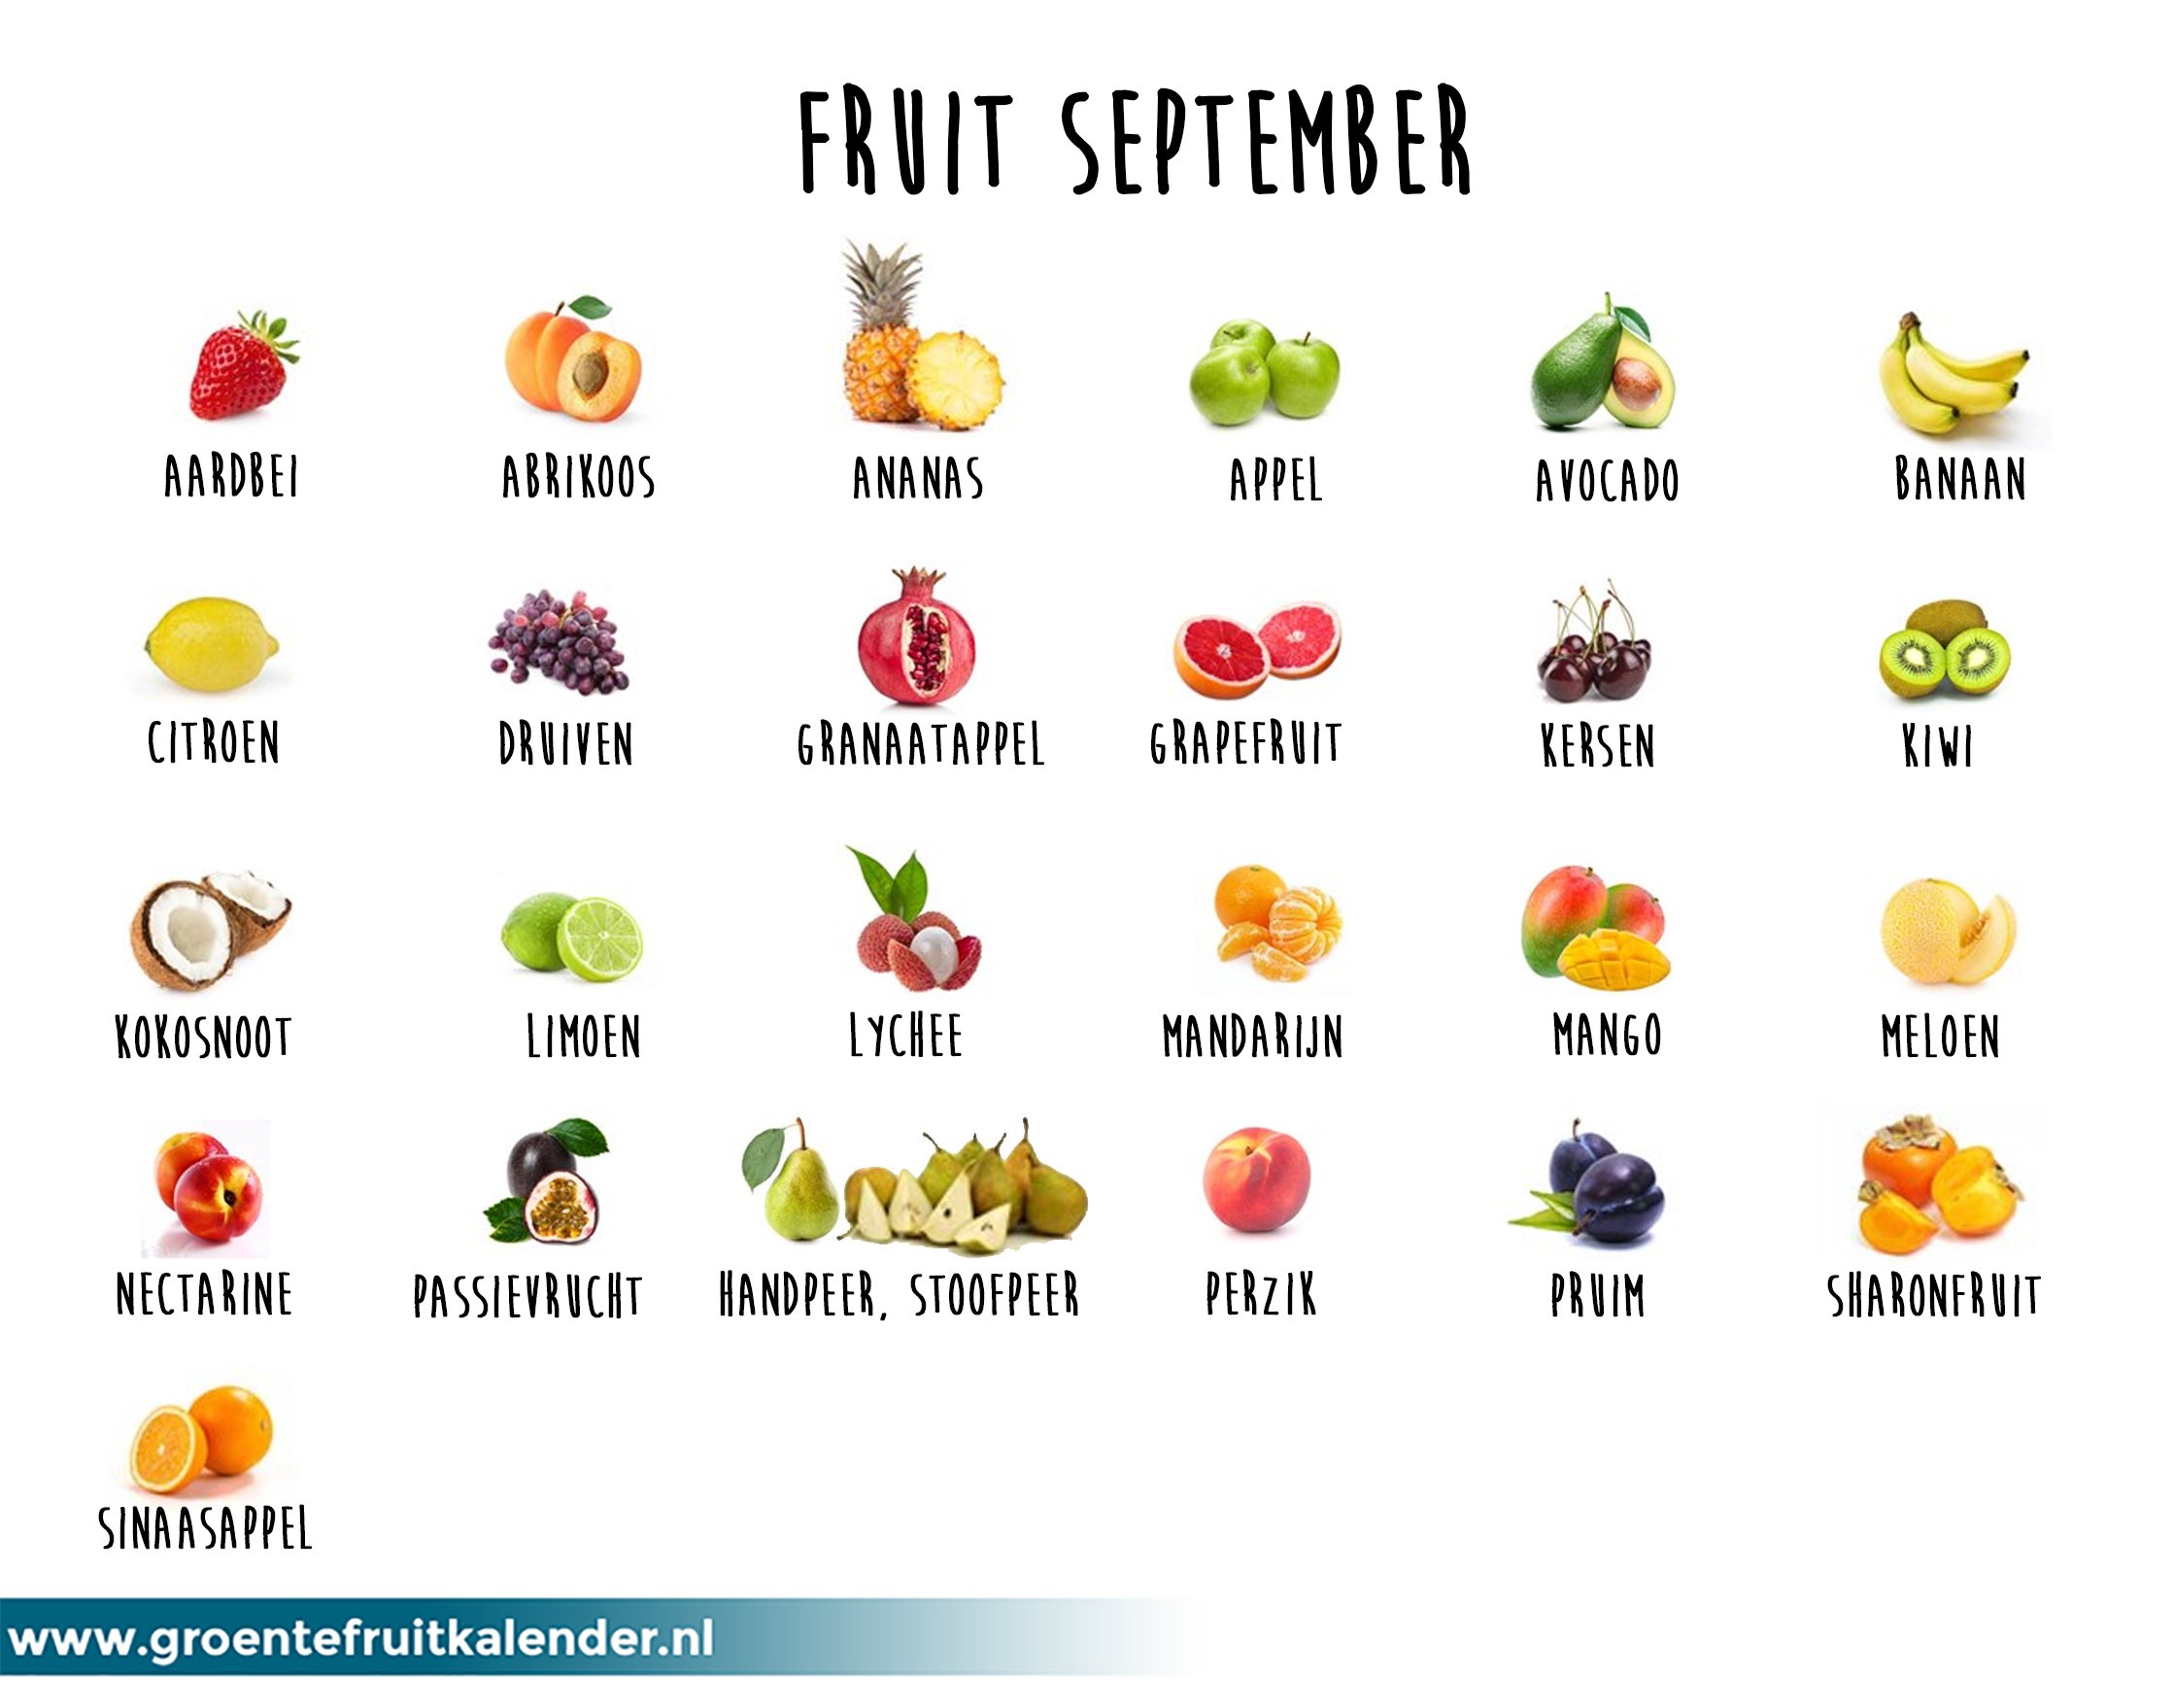 Begeleiden Verplicht Ongeëvenaard Milieu Centraal on Twitter: "Deze soorten fruit zijn in september een  milieuvriendelijke keus! Check ook https://t.co/IzSZc4scAj. Zit jouw  favoriete fruit erbij? https://t.co/GRagEwMaQL" / Twitter